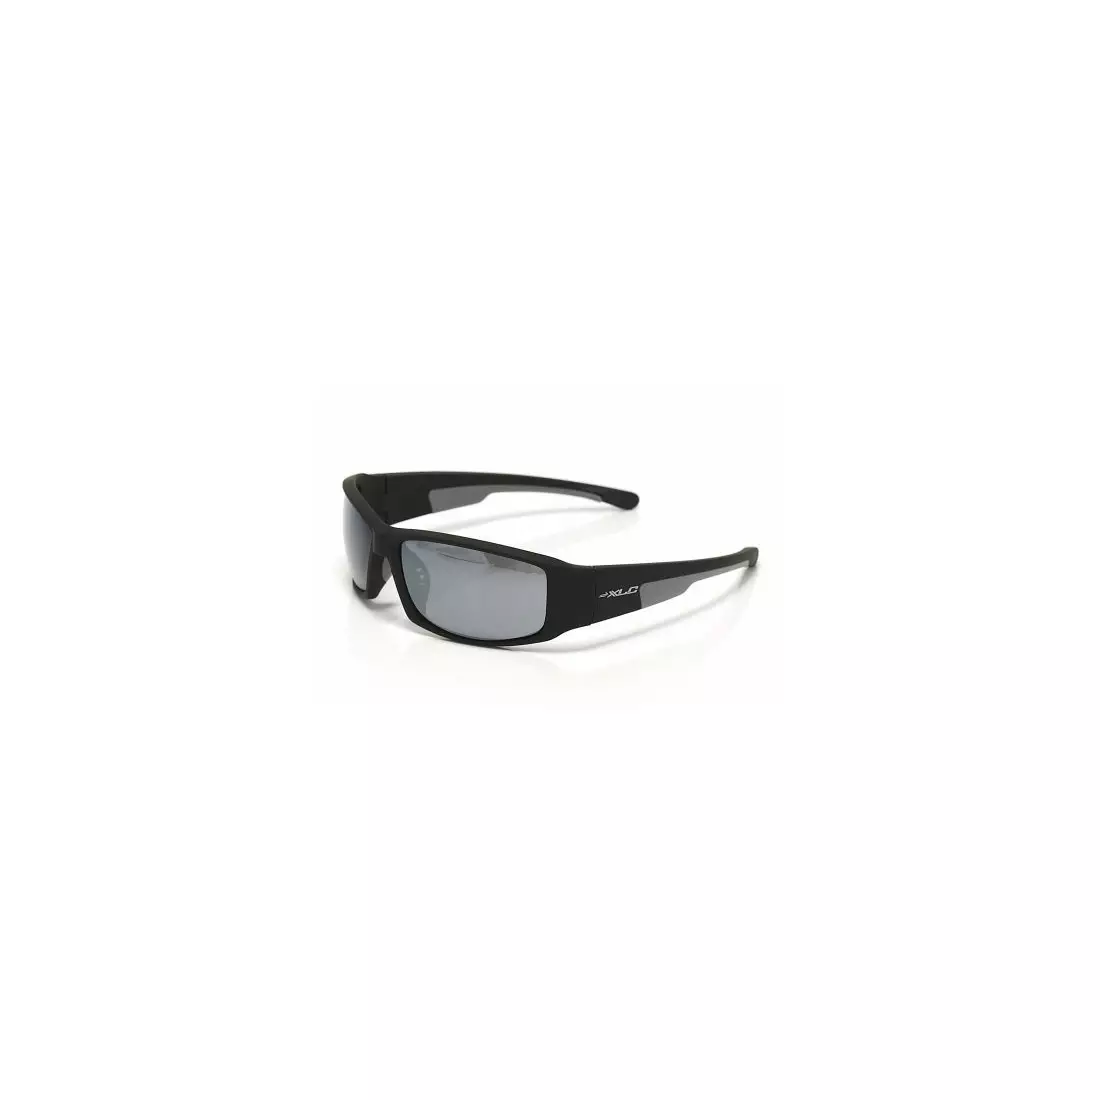 XLC CAYMAN 157100 sports glasses - color: Black